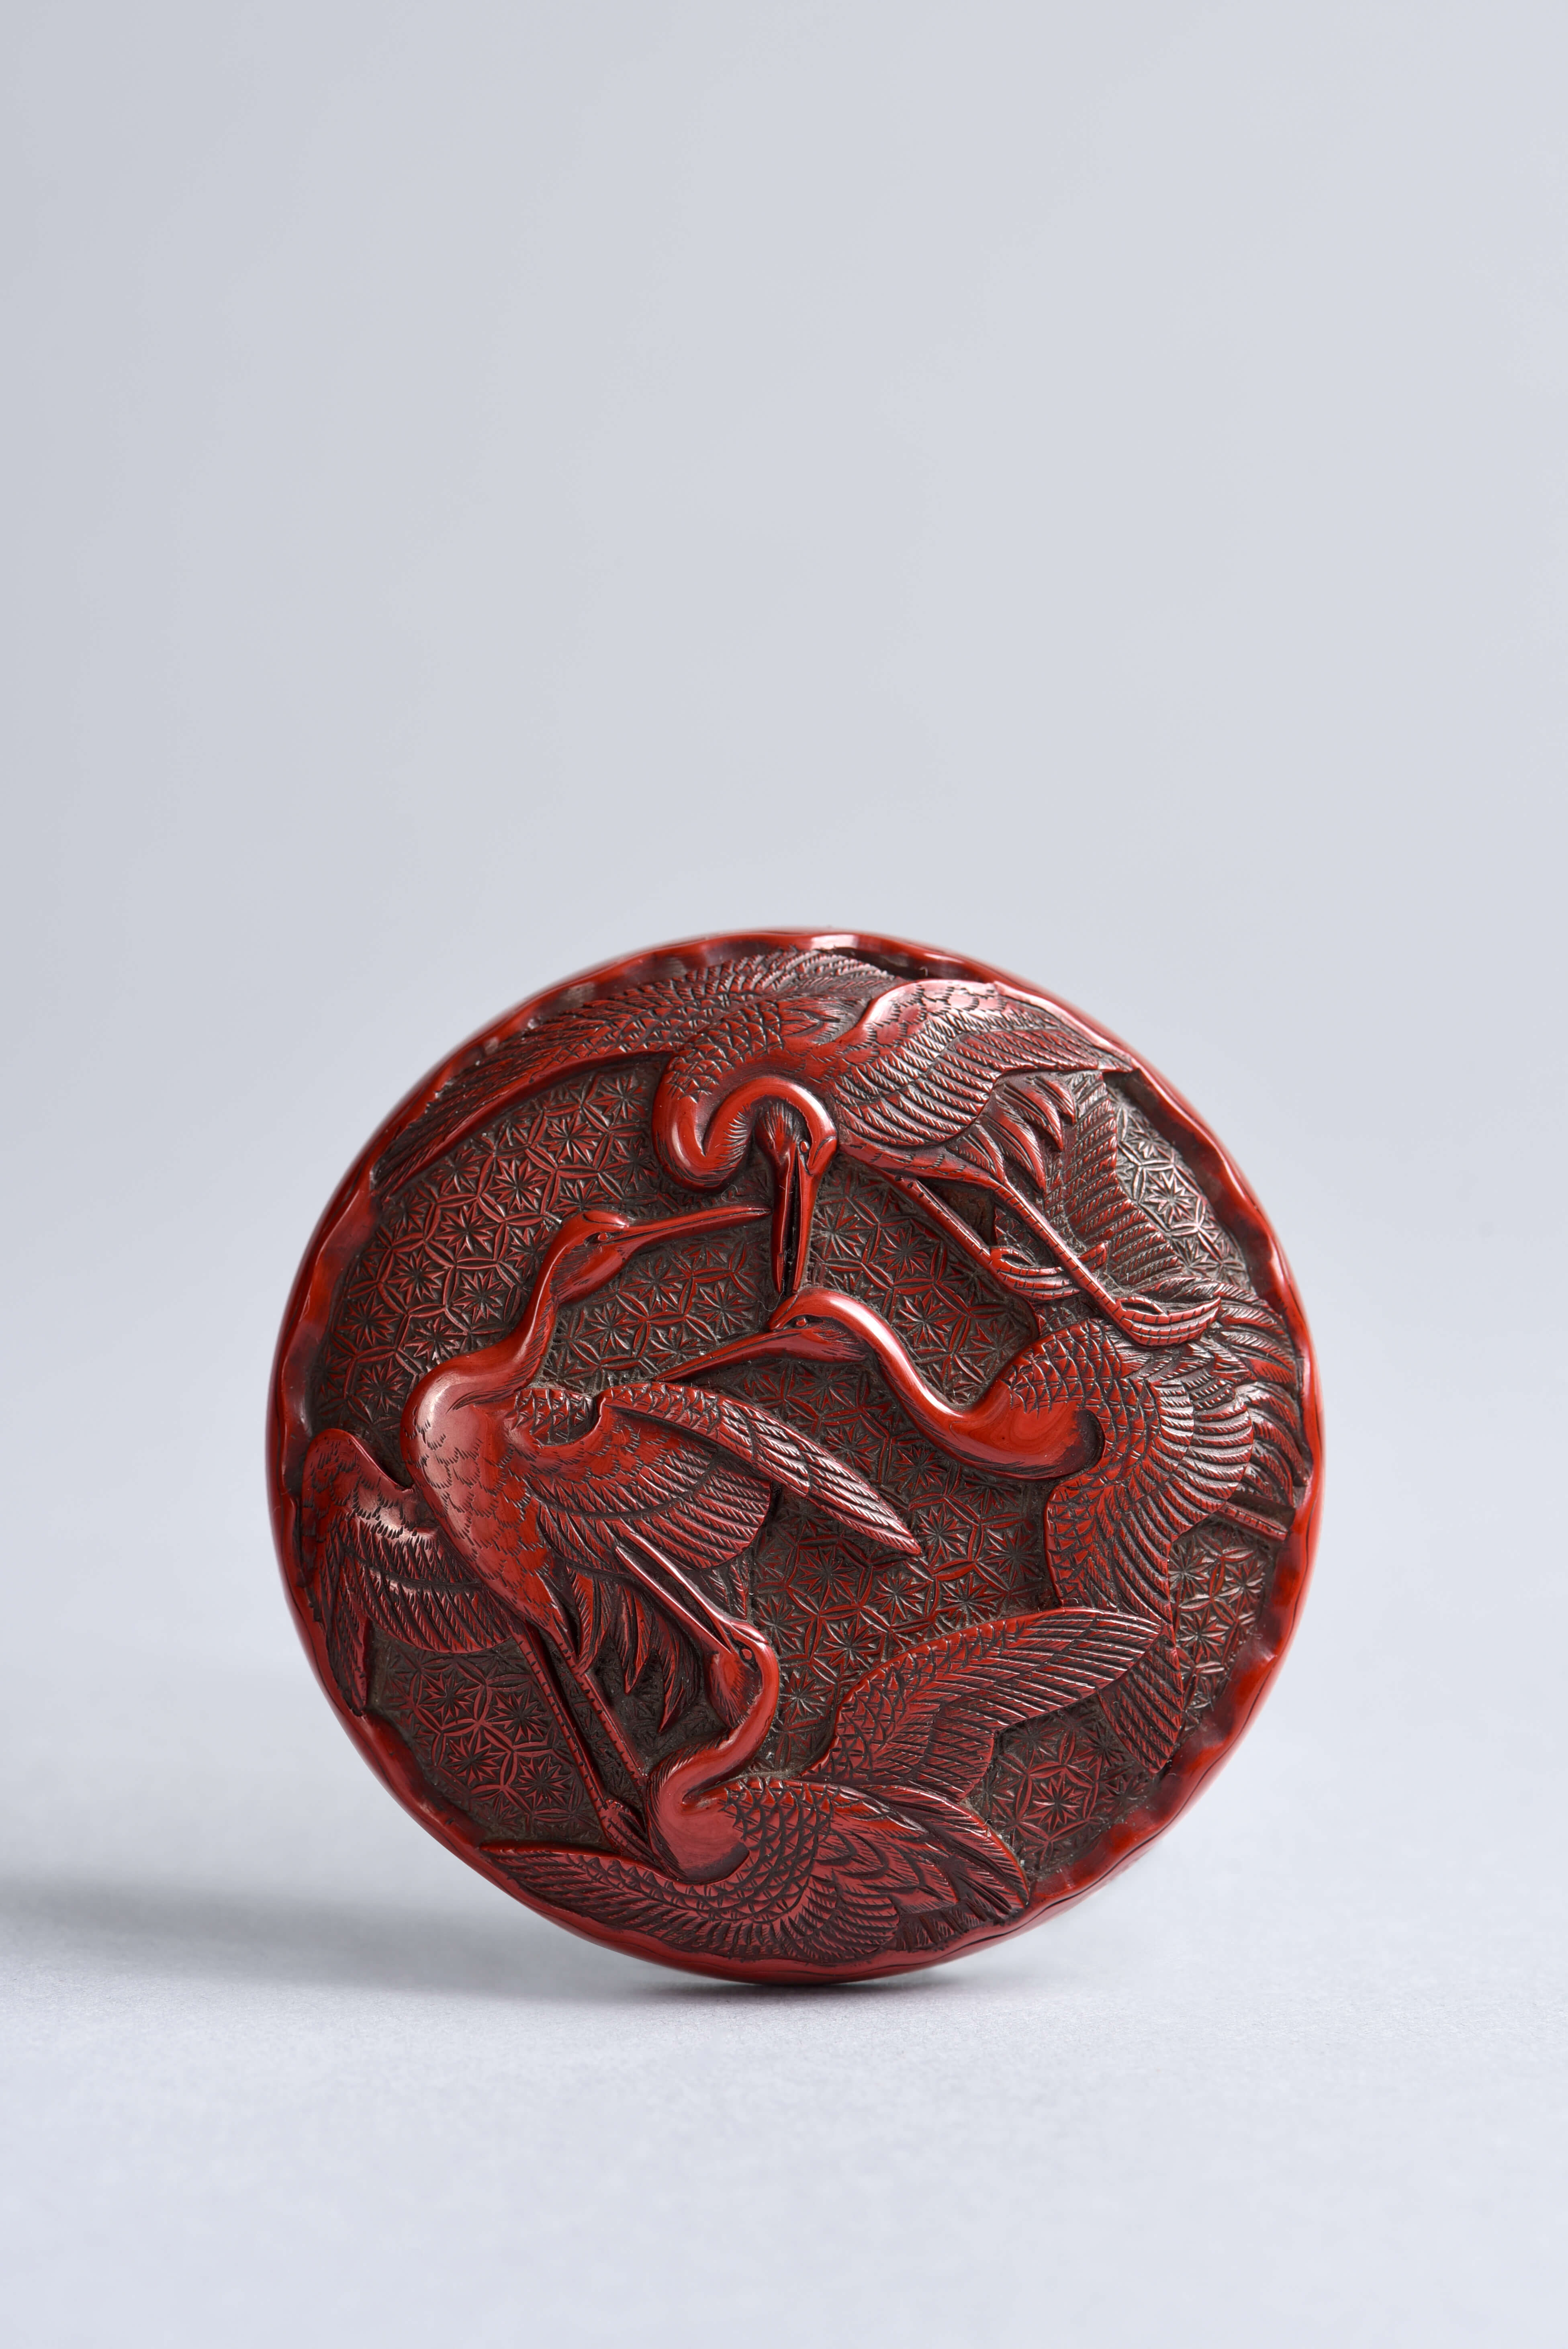 B3-5沐澤古美術 明代 剔紅松鶴長青香盒。圖 / 台北文華藝術博覽會提供。